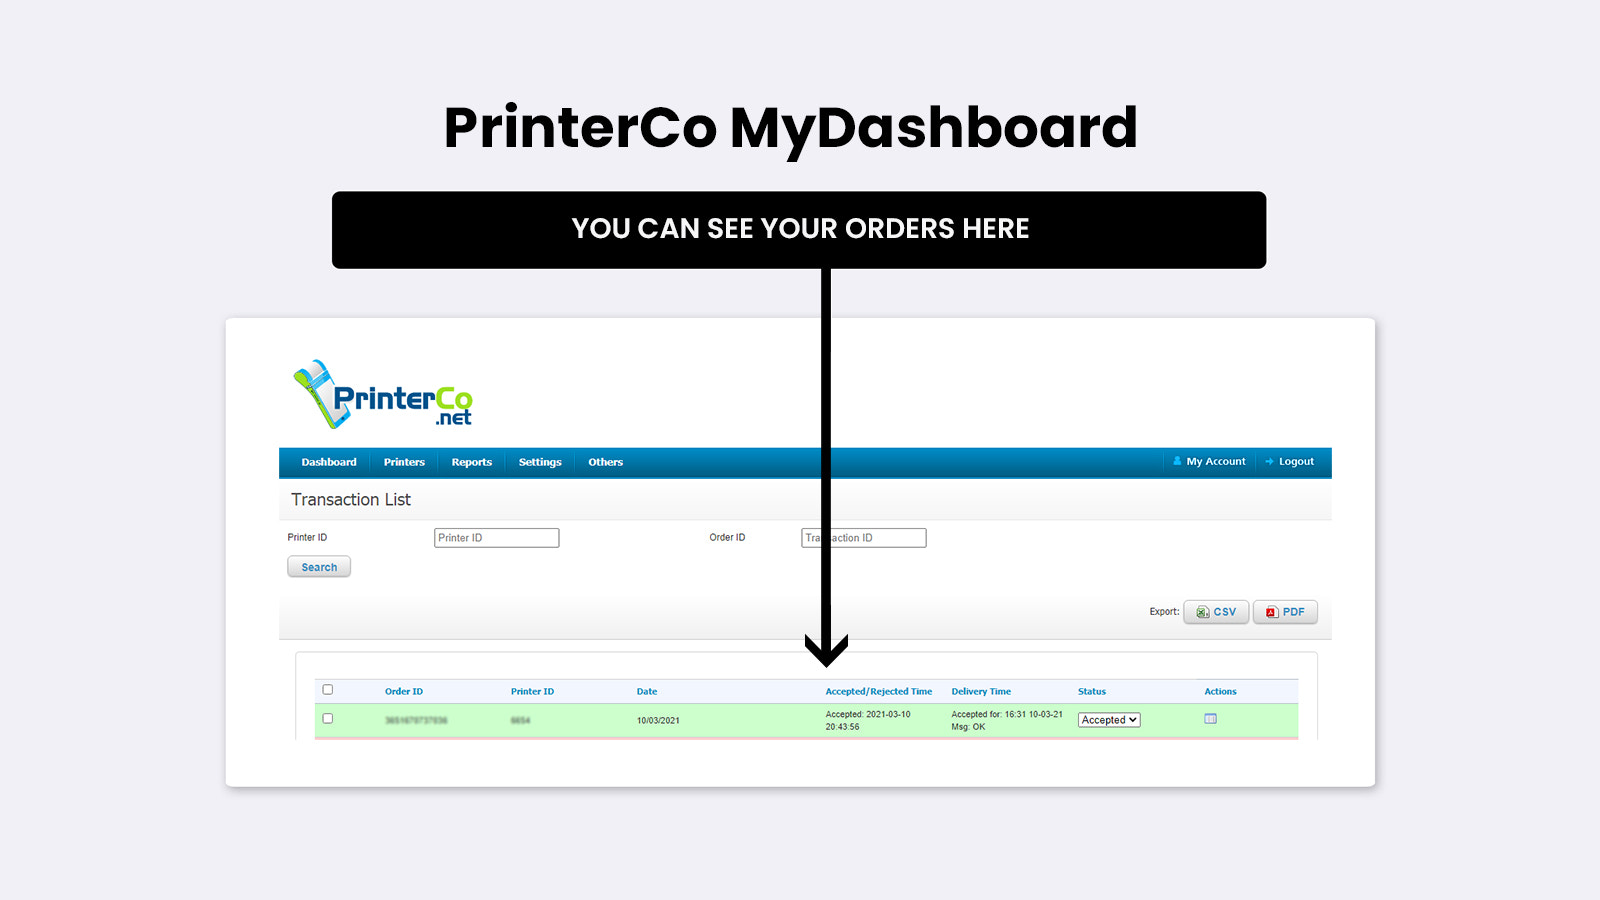 Dies ist die Bestellungsübersicht des PrinterCo MyDashboard Panels